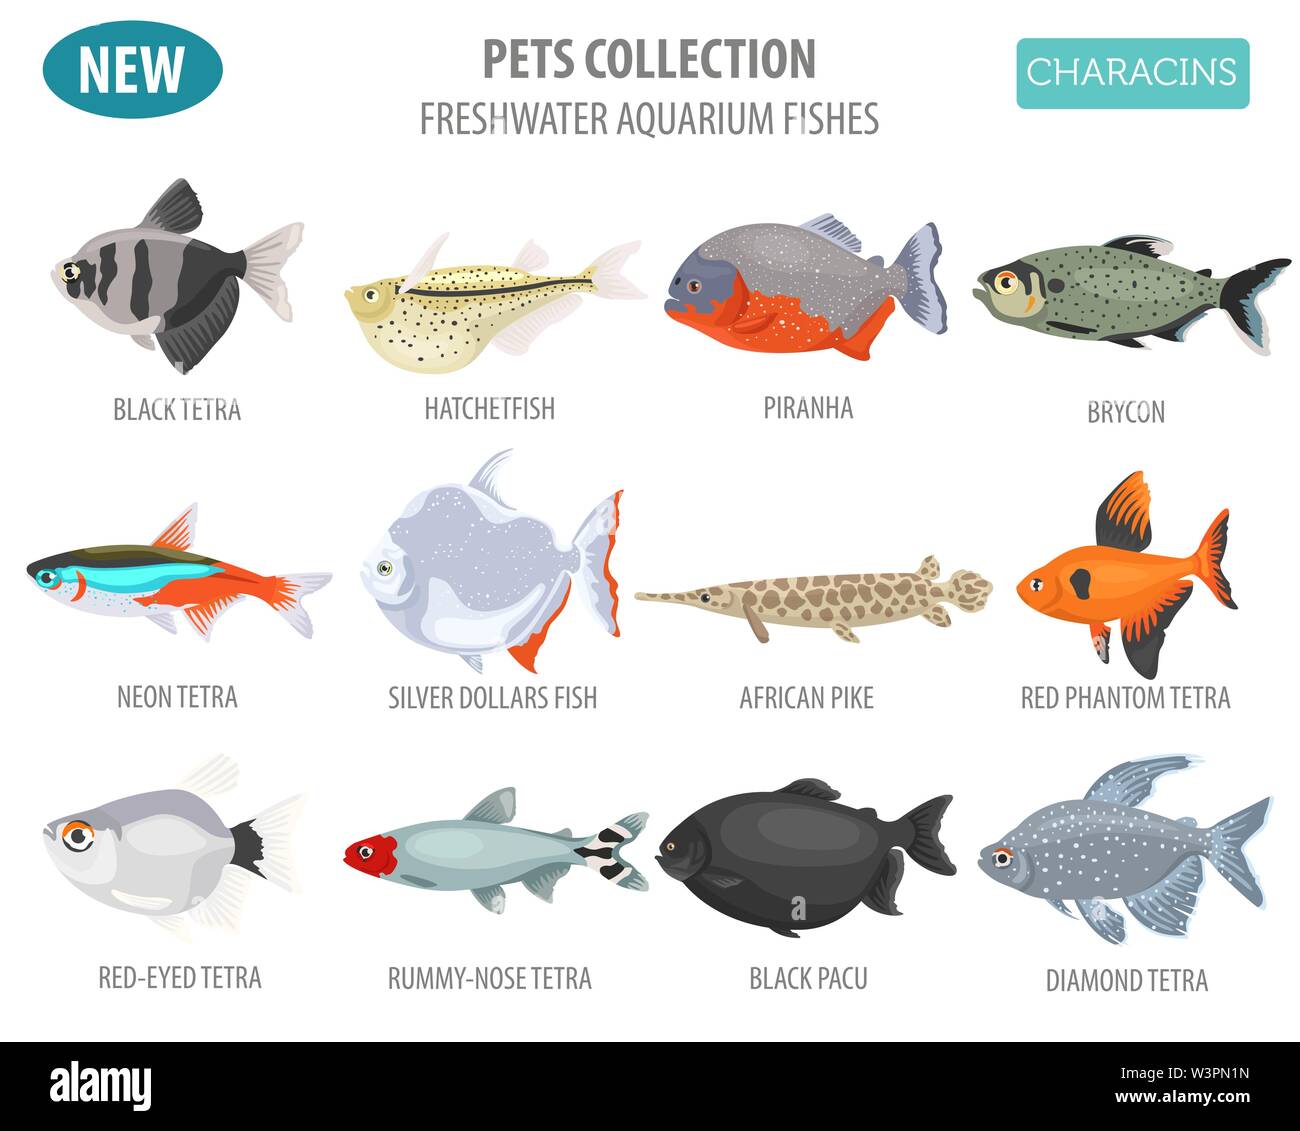 Süßwasser-Aquarium Fische Rassen Icon Set Flat Style isoliert auf Weiss. Salmler. Erstellen Sie eigene Infografik über Haustiere. Vector Illustration Stock Vektor